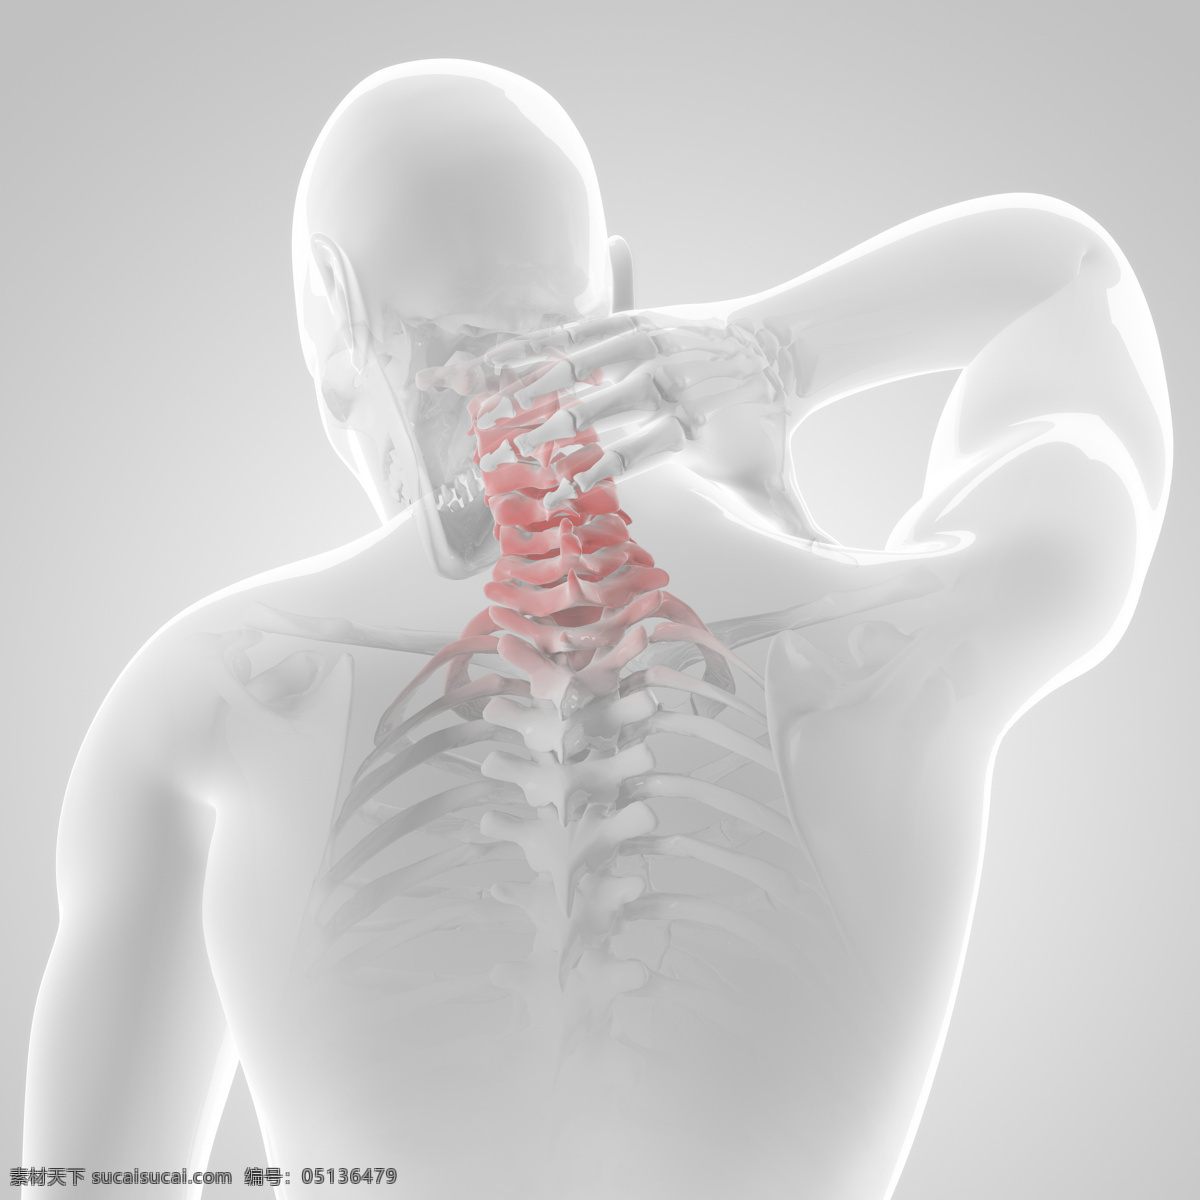 人体 劲 椎 x 光 透视图 x光 图像 医疗主题 劲椎 医疗护理 现代科技